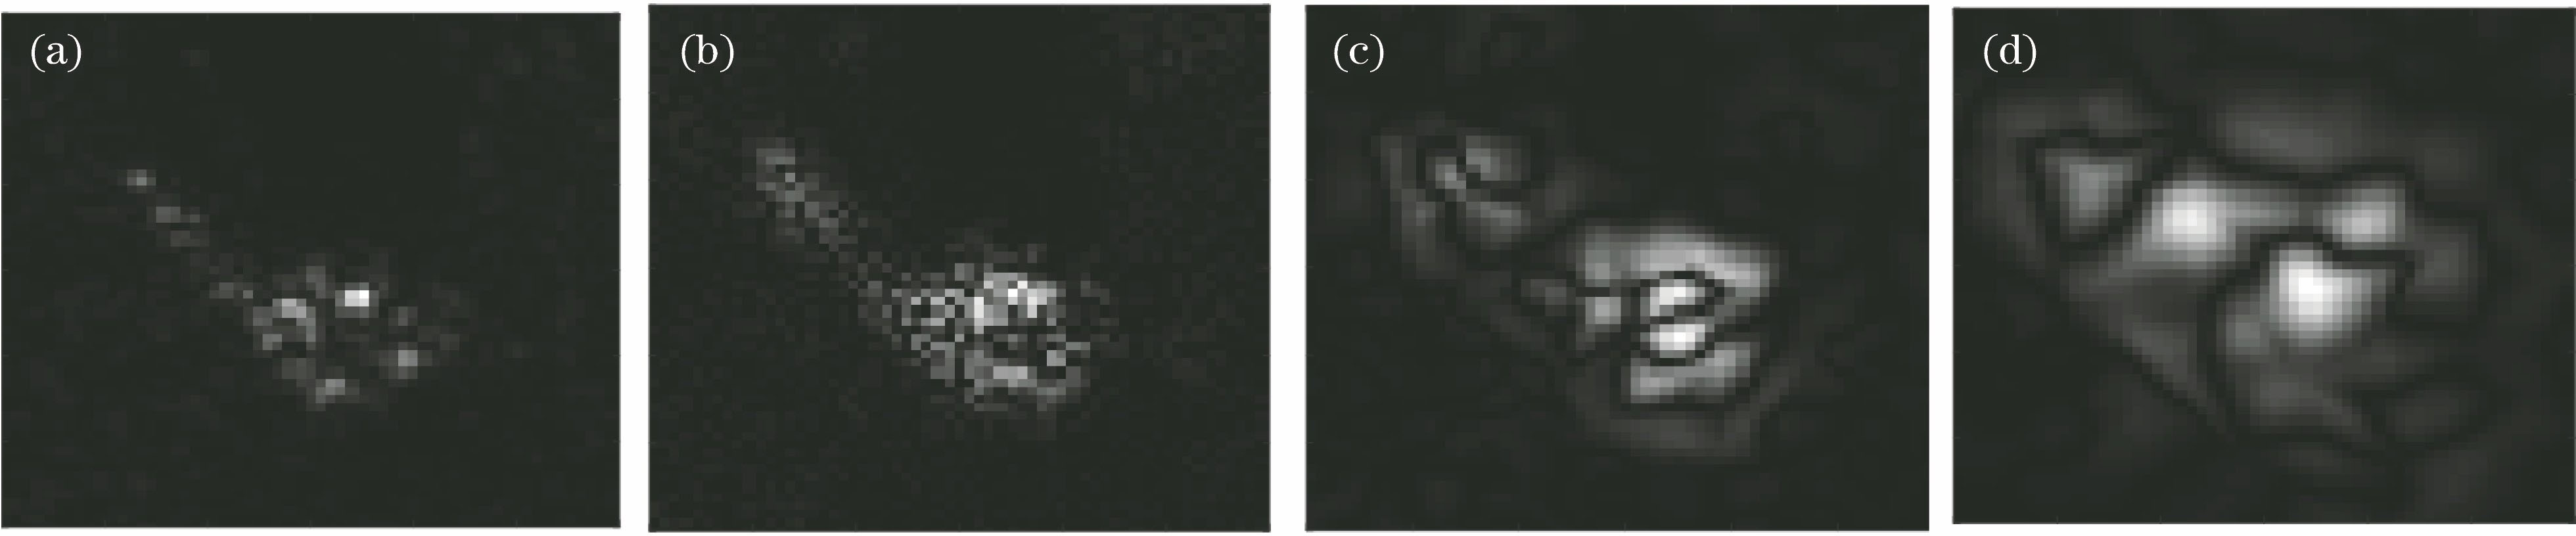 Illustration of decomposition of SAR images via BEMD. (a) Original image; (b) BIMF at first level; (c) BIMF at second level; (d) BIMF at third level